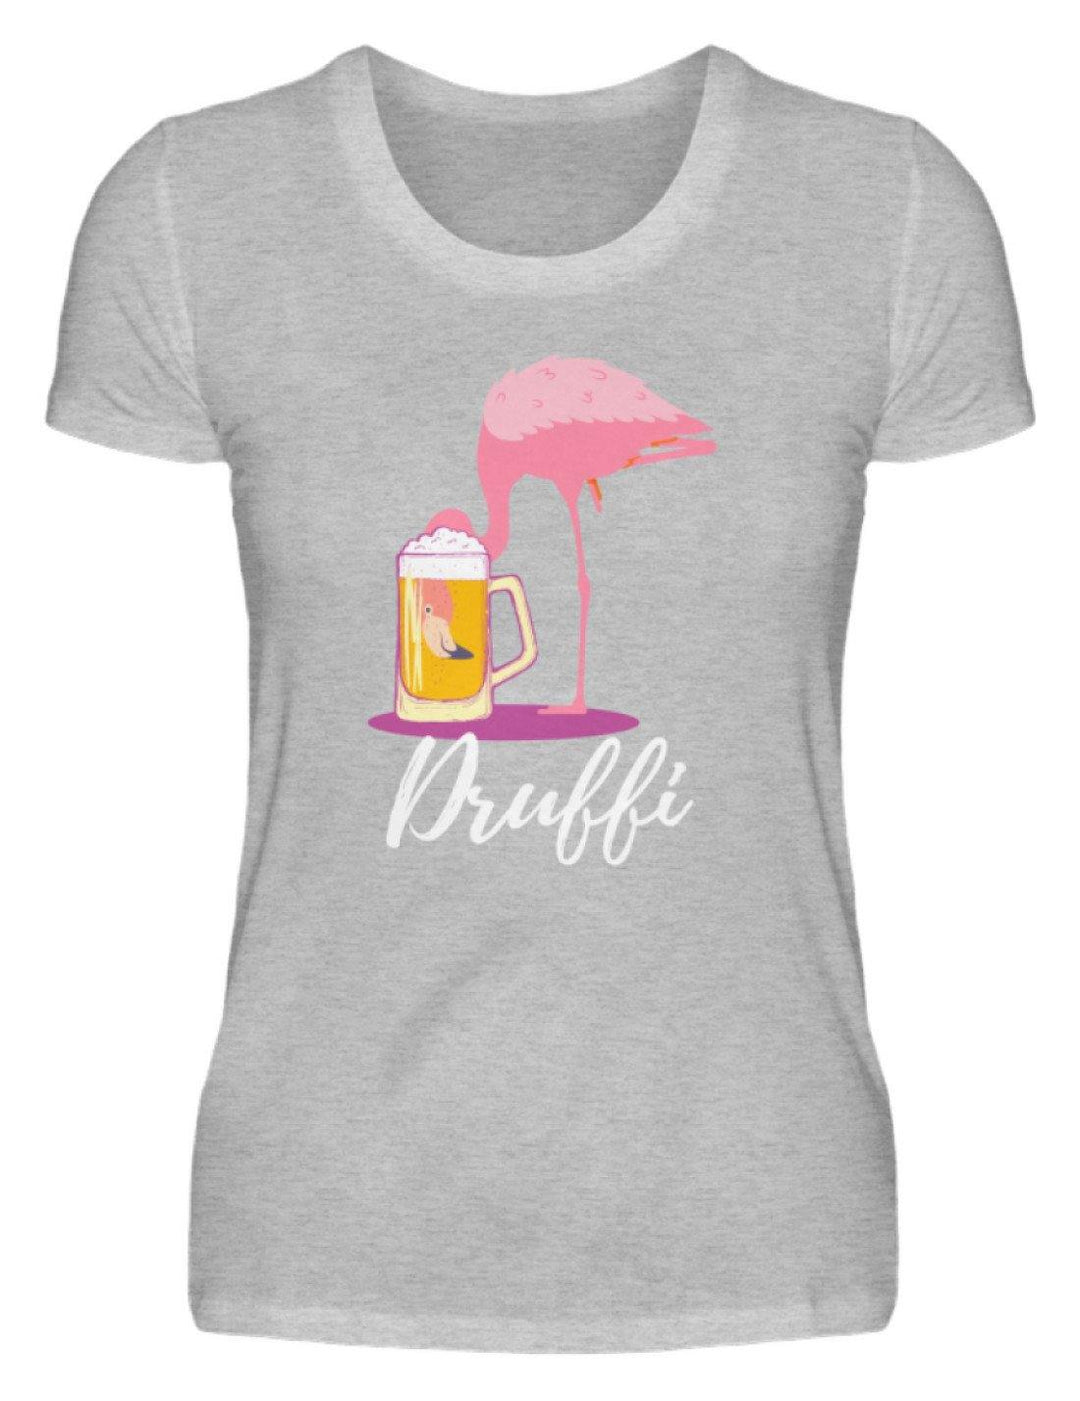 Flamingo Druffi - Words on Shirt  - Damenshirt - Words on Shirts Sag es mit dem Mittelfinger Shirts Hoodies Sweatshirt Taschen Gymsack Spruch Sprüche Statement